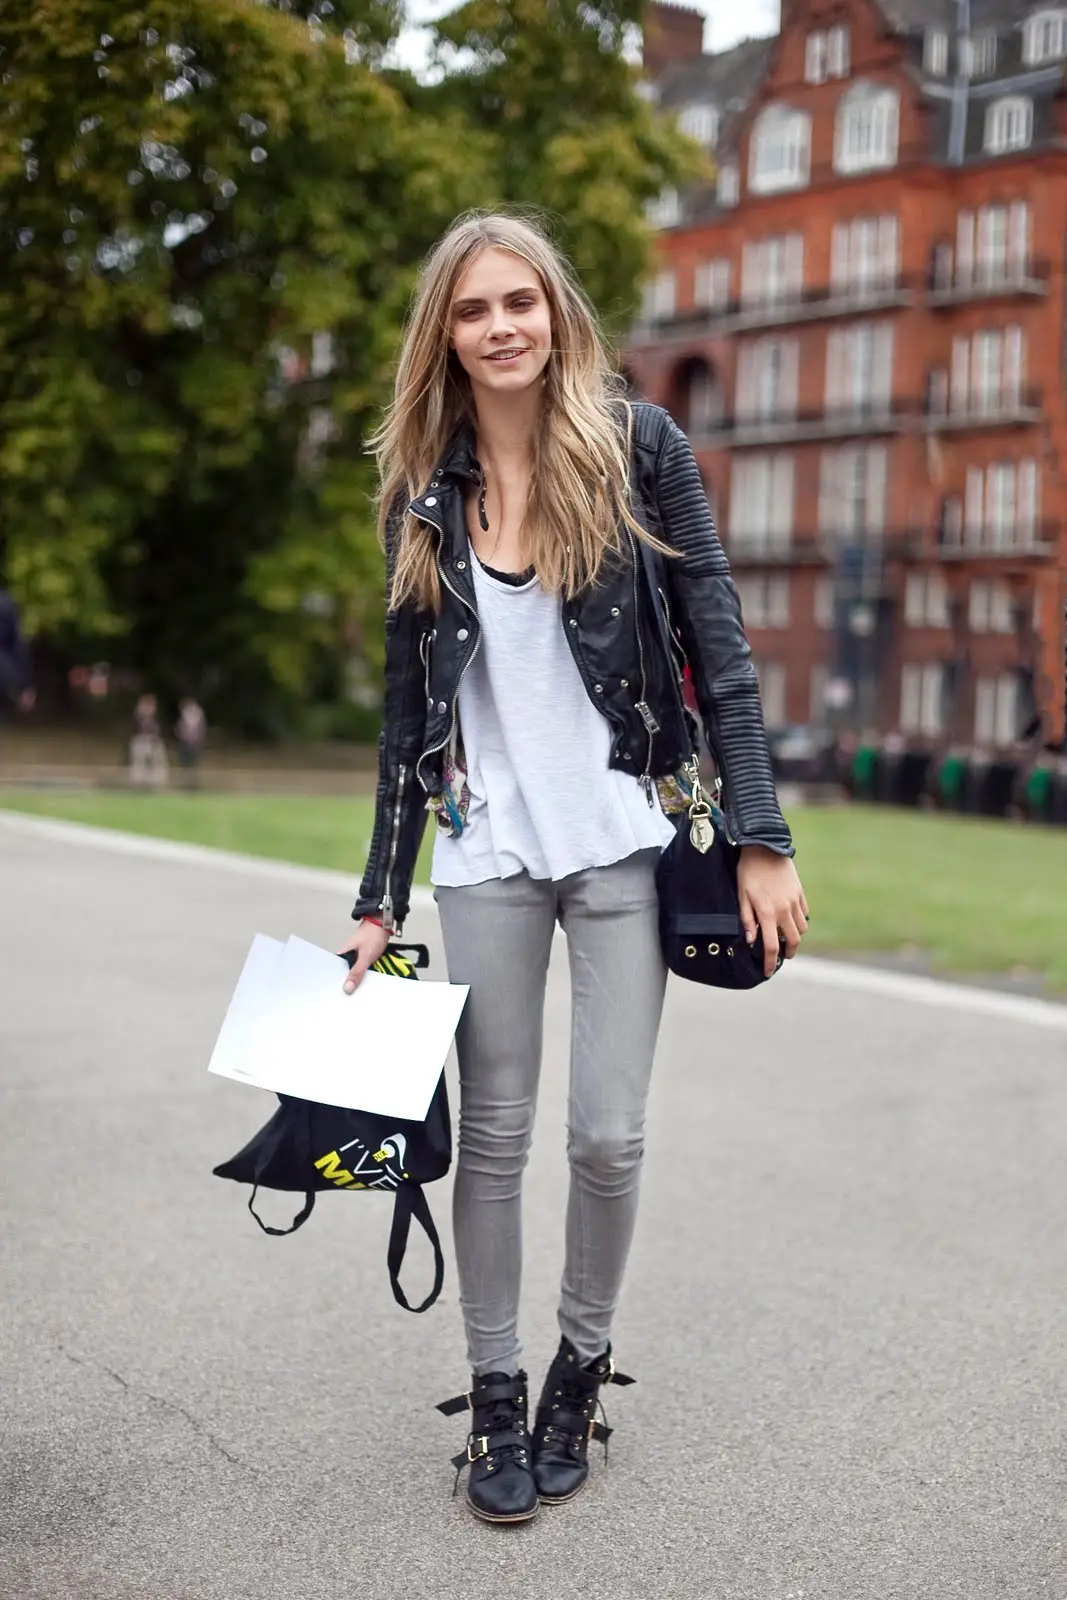 Outfit con pantalón gris: 27 looks de moda para mujeres con actitud